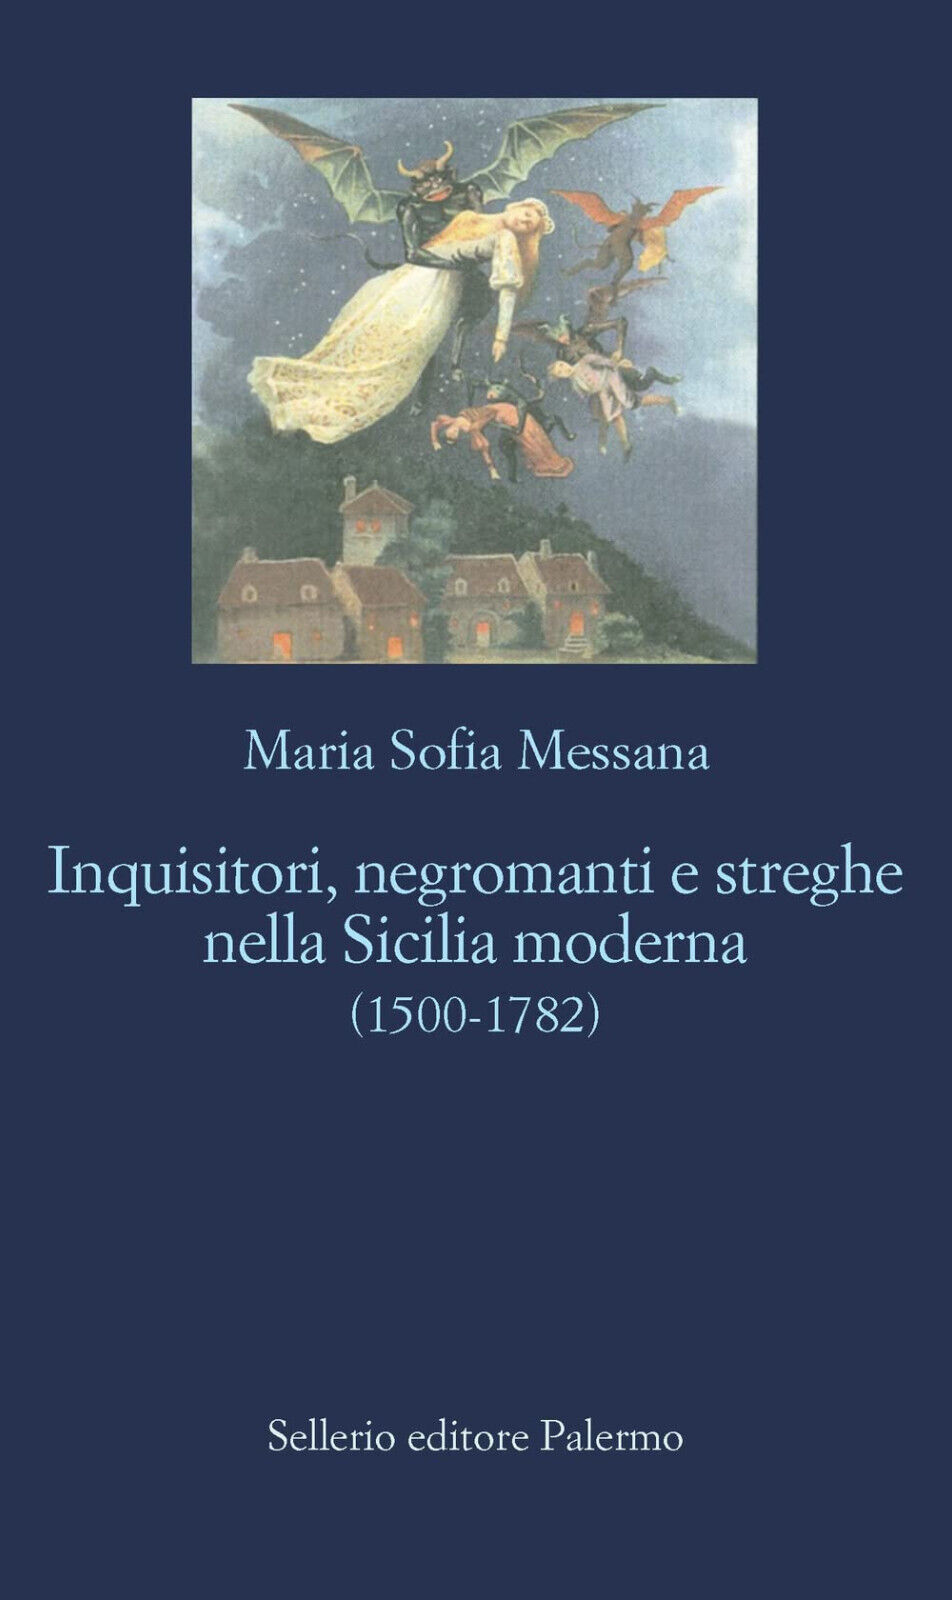 Inquisitori, negromanti, streghe nella Sicilia moderna (1500-1782) - 2022 libro usato